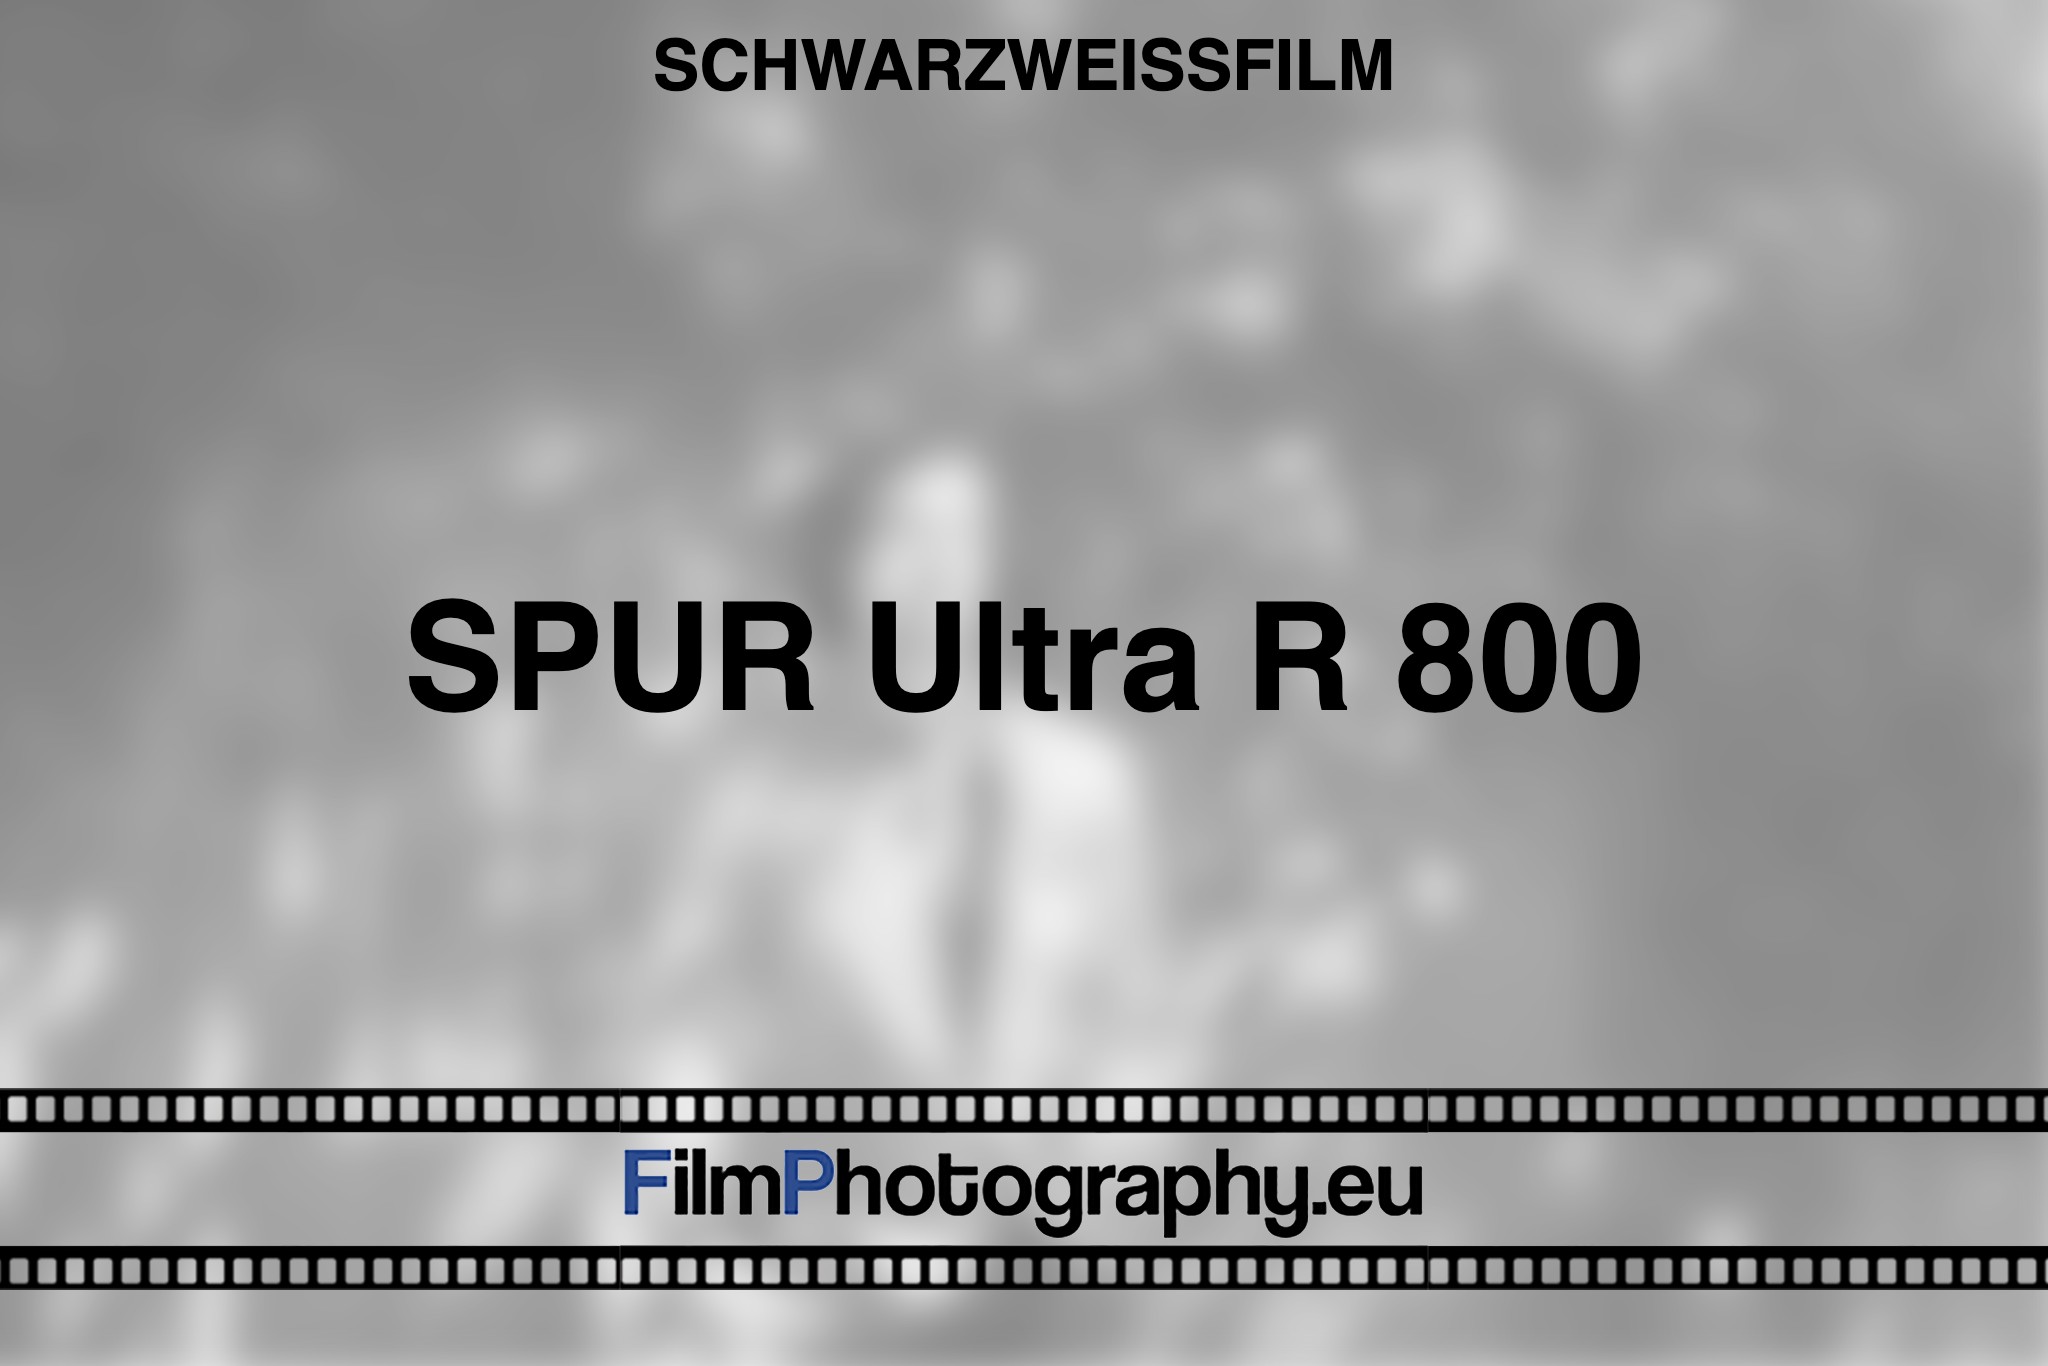 spur-ultra-r-800-schwarzweißfilm-bnv